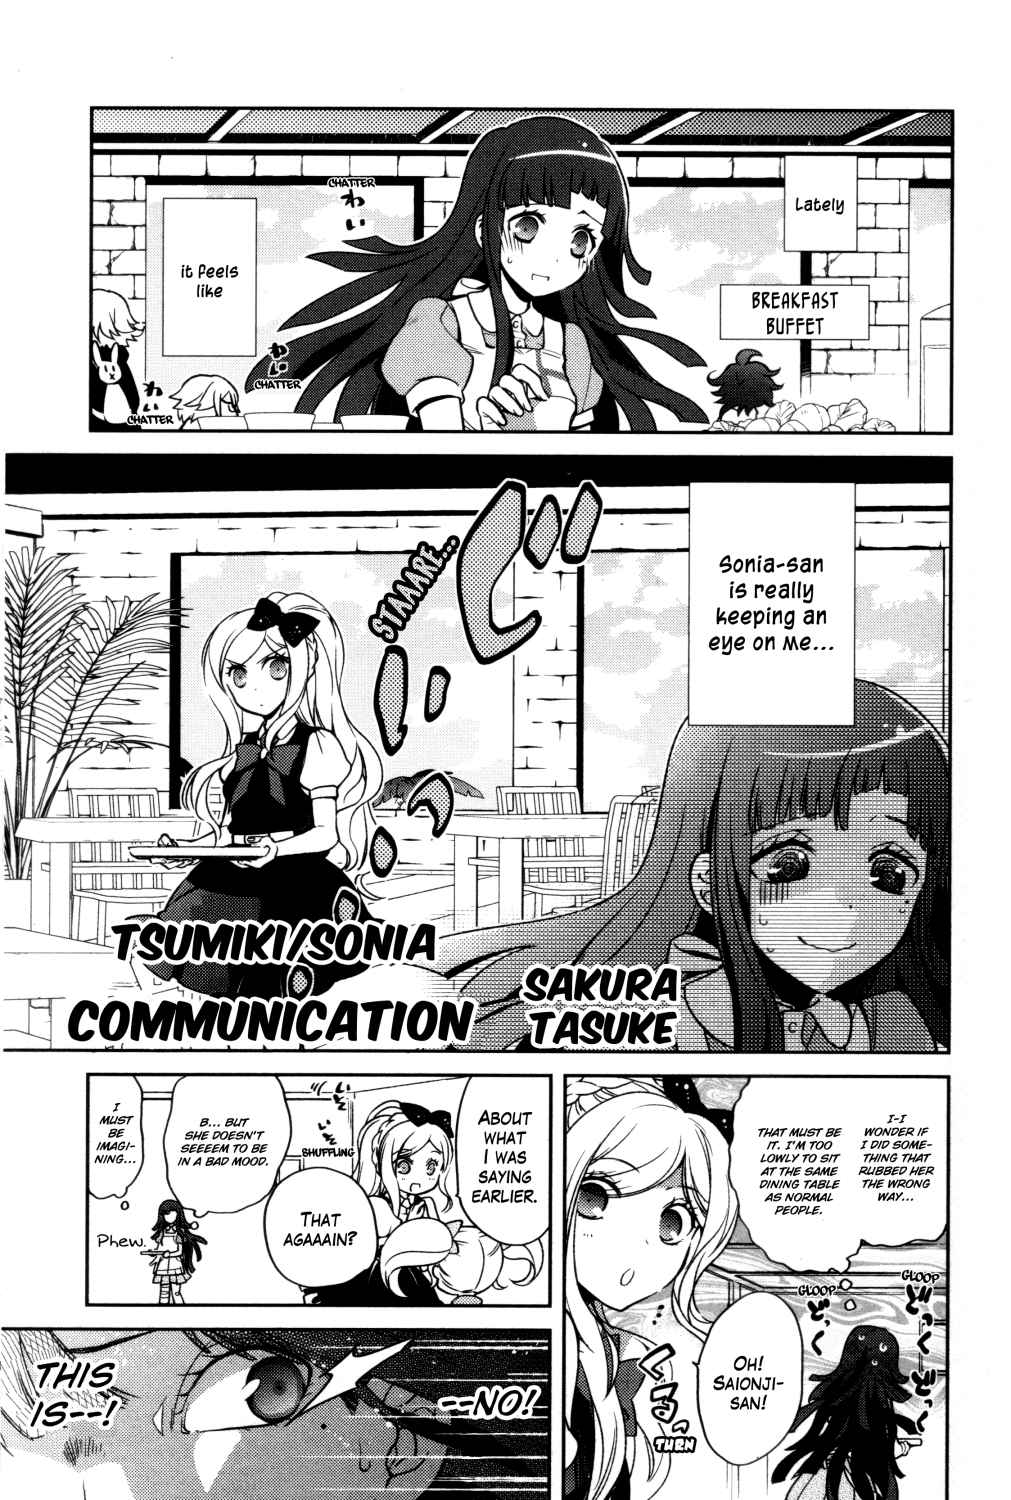 Danganronpa 1&2 Comic Anthology Vol. 1 Ch. 10 Tsumiki/Sonia Connection by Sakura Tasuke